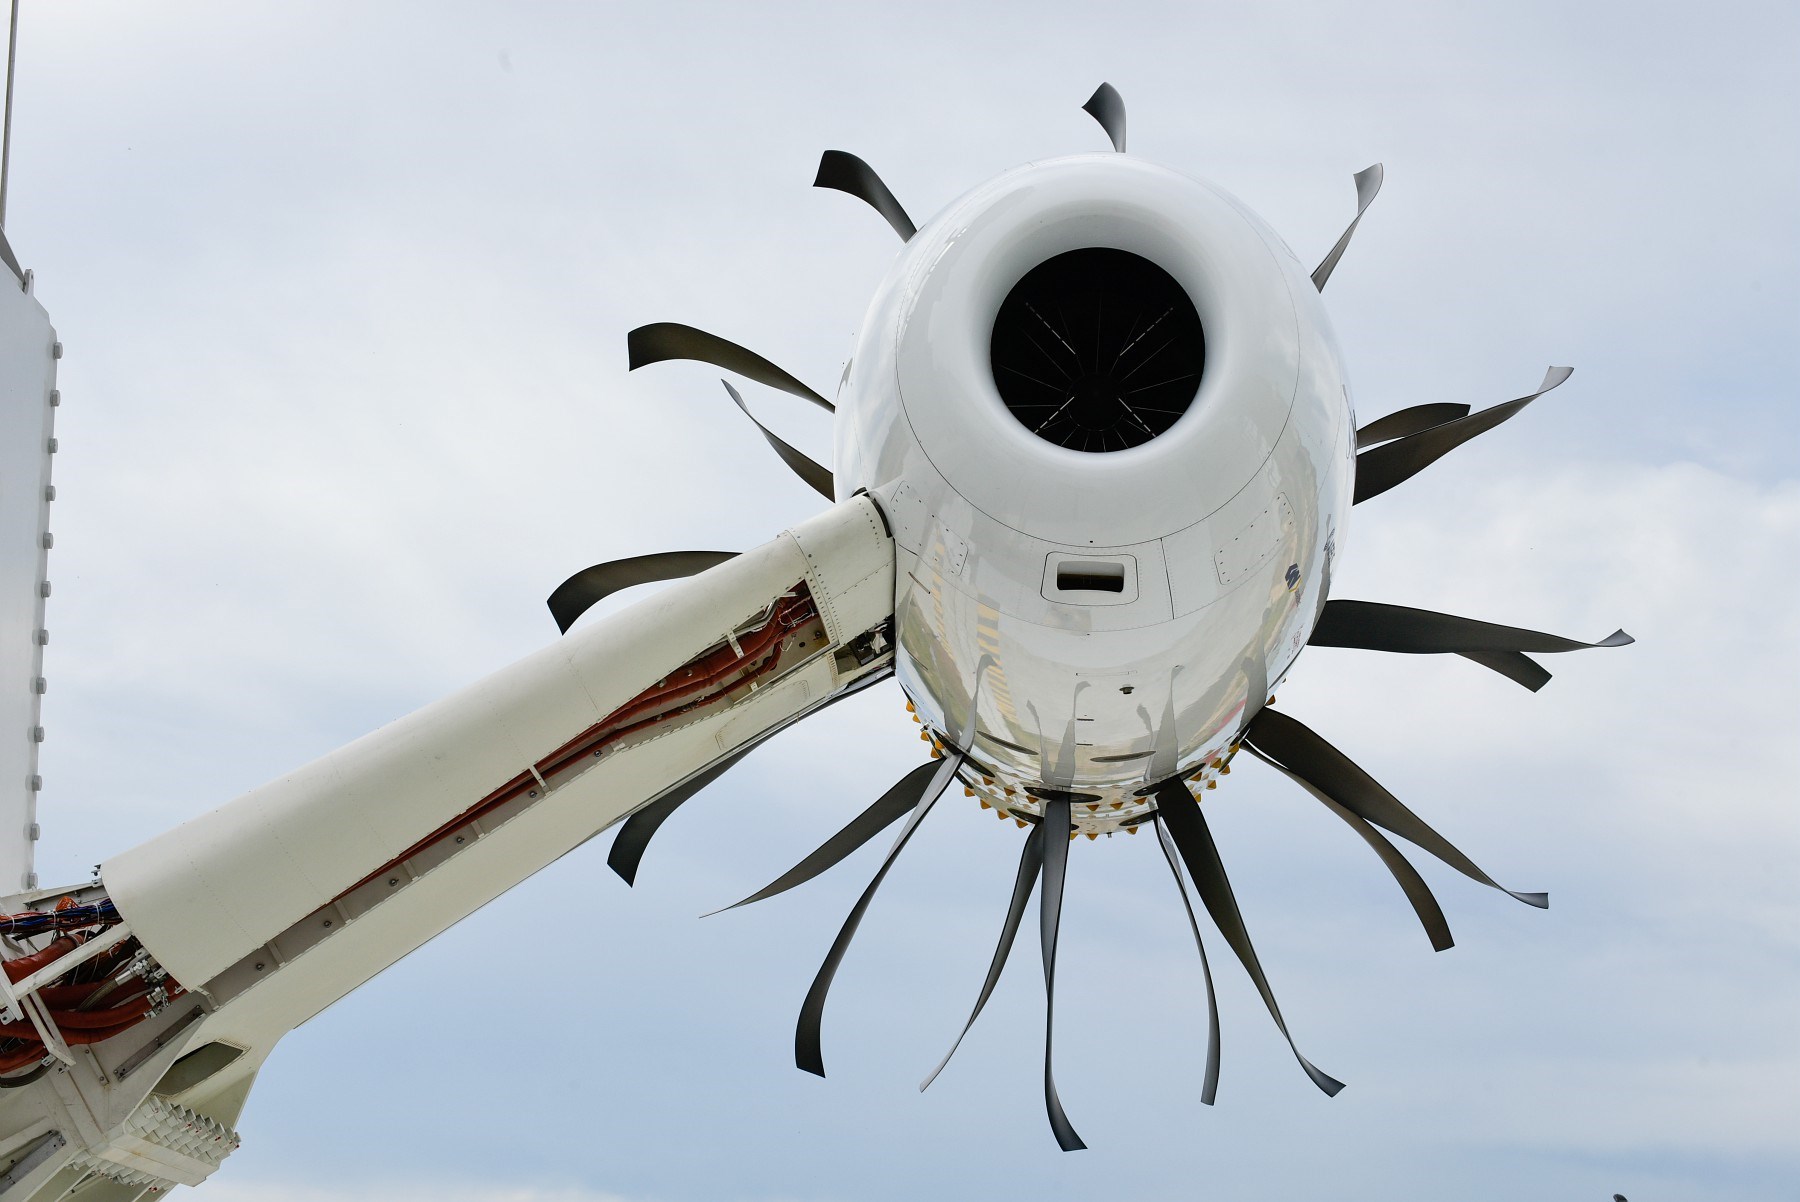 Günümüz uçak motoru teknolojilerinin olumlu yönlerini harmanlayan motor: Open Rotor